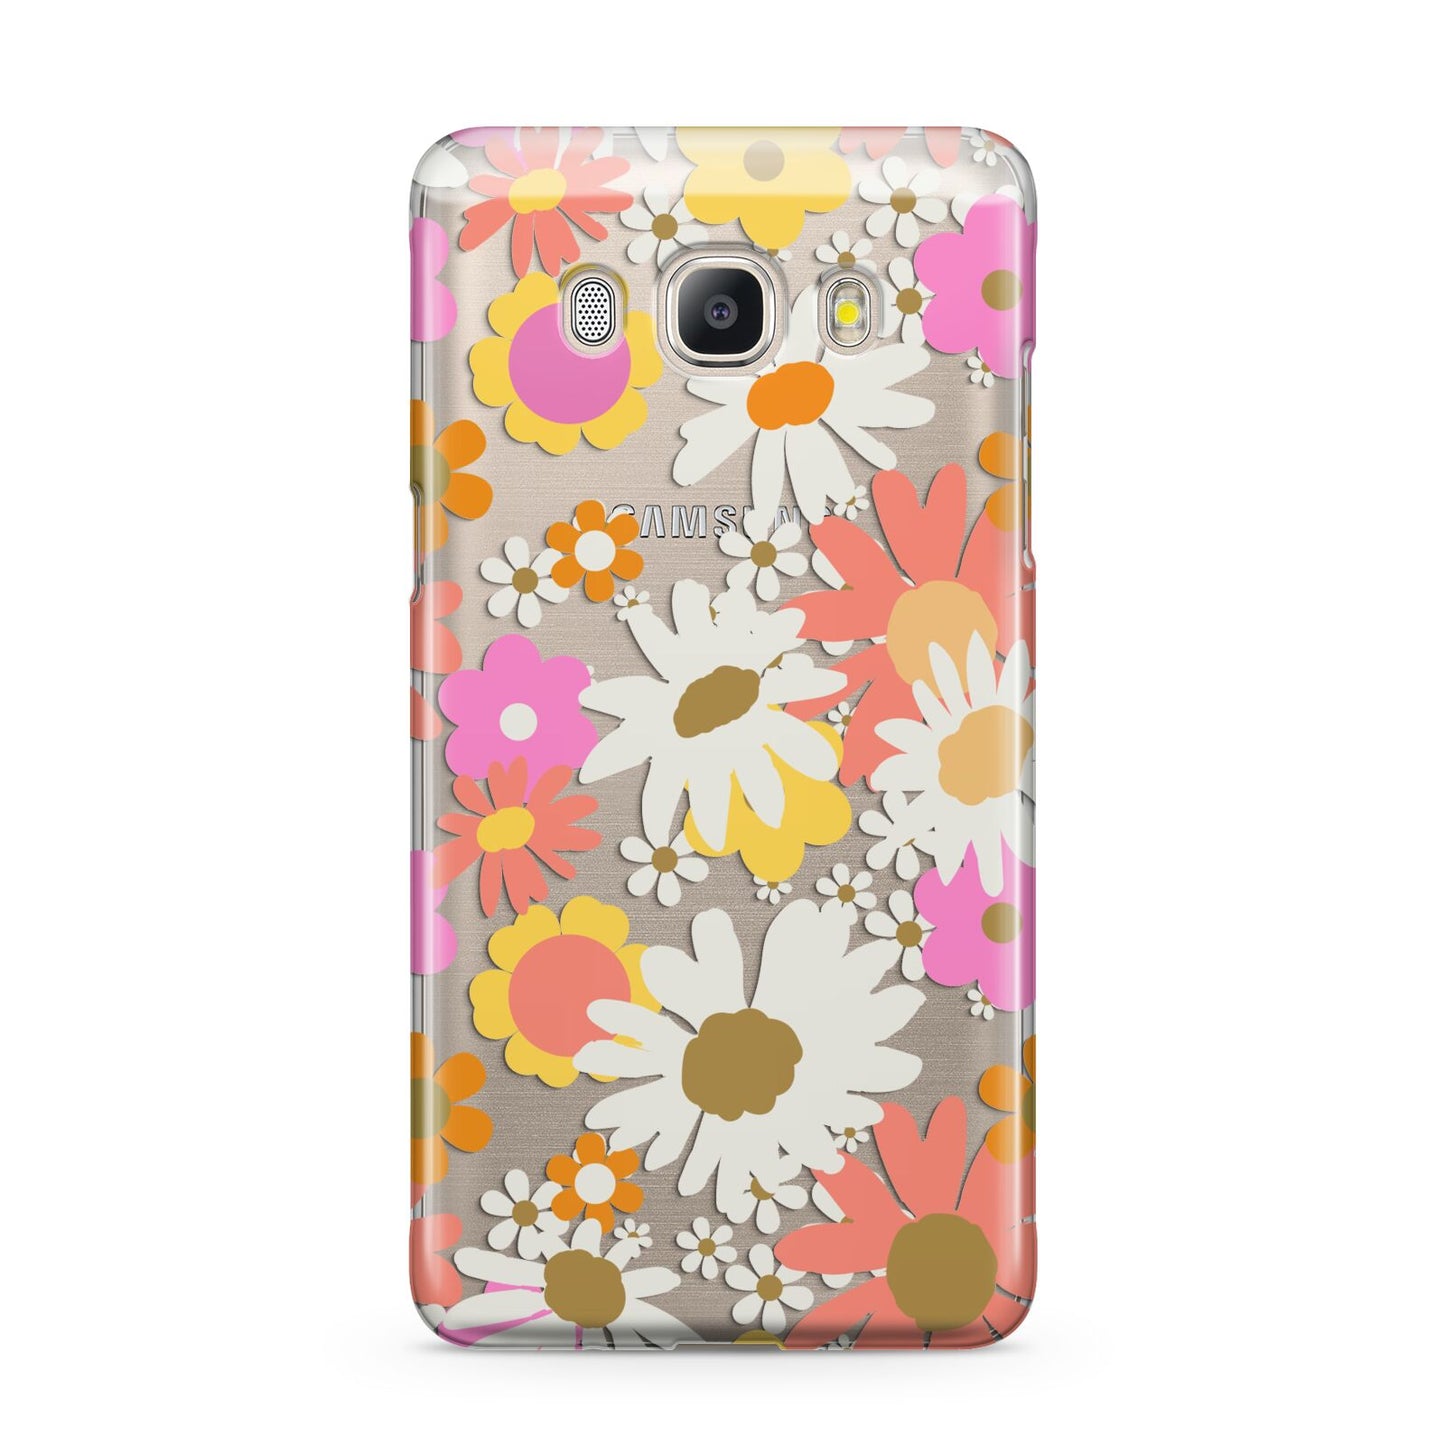 Seventies Floral Samsung Galaxy J5 2016 Case